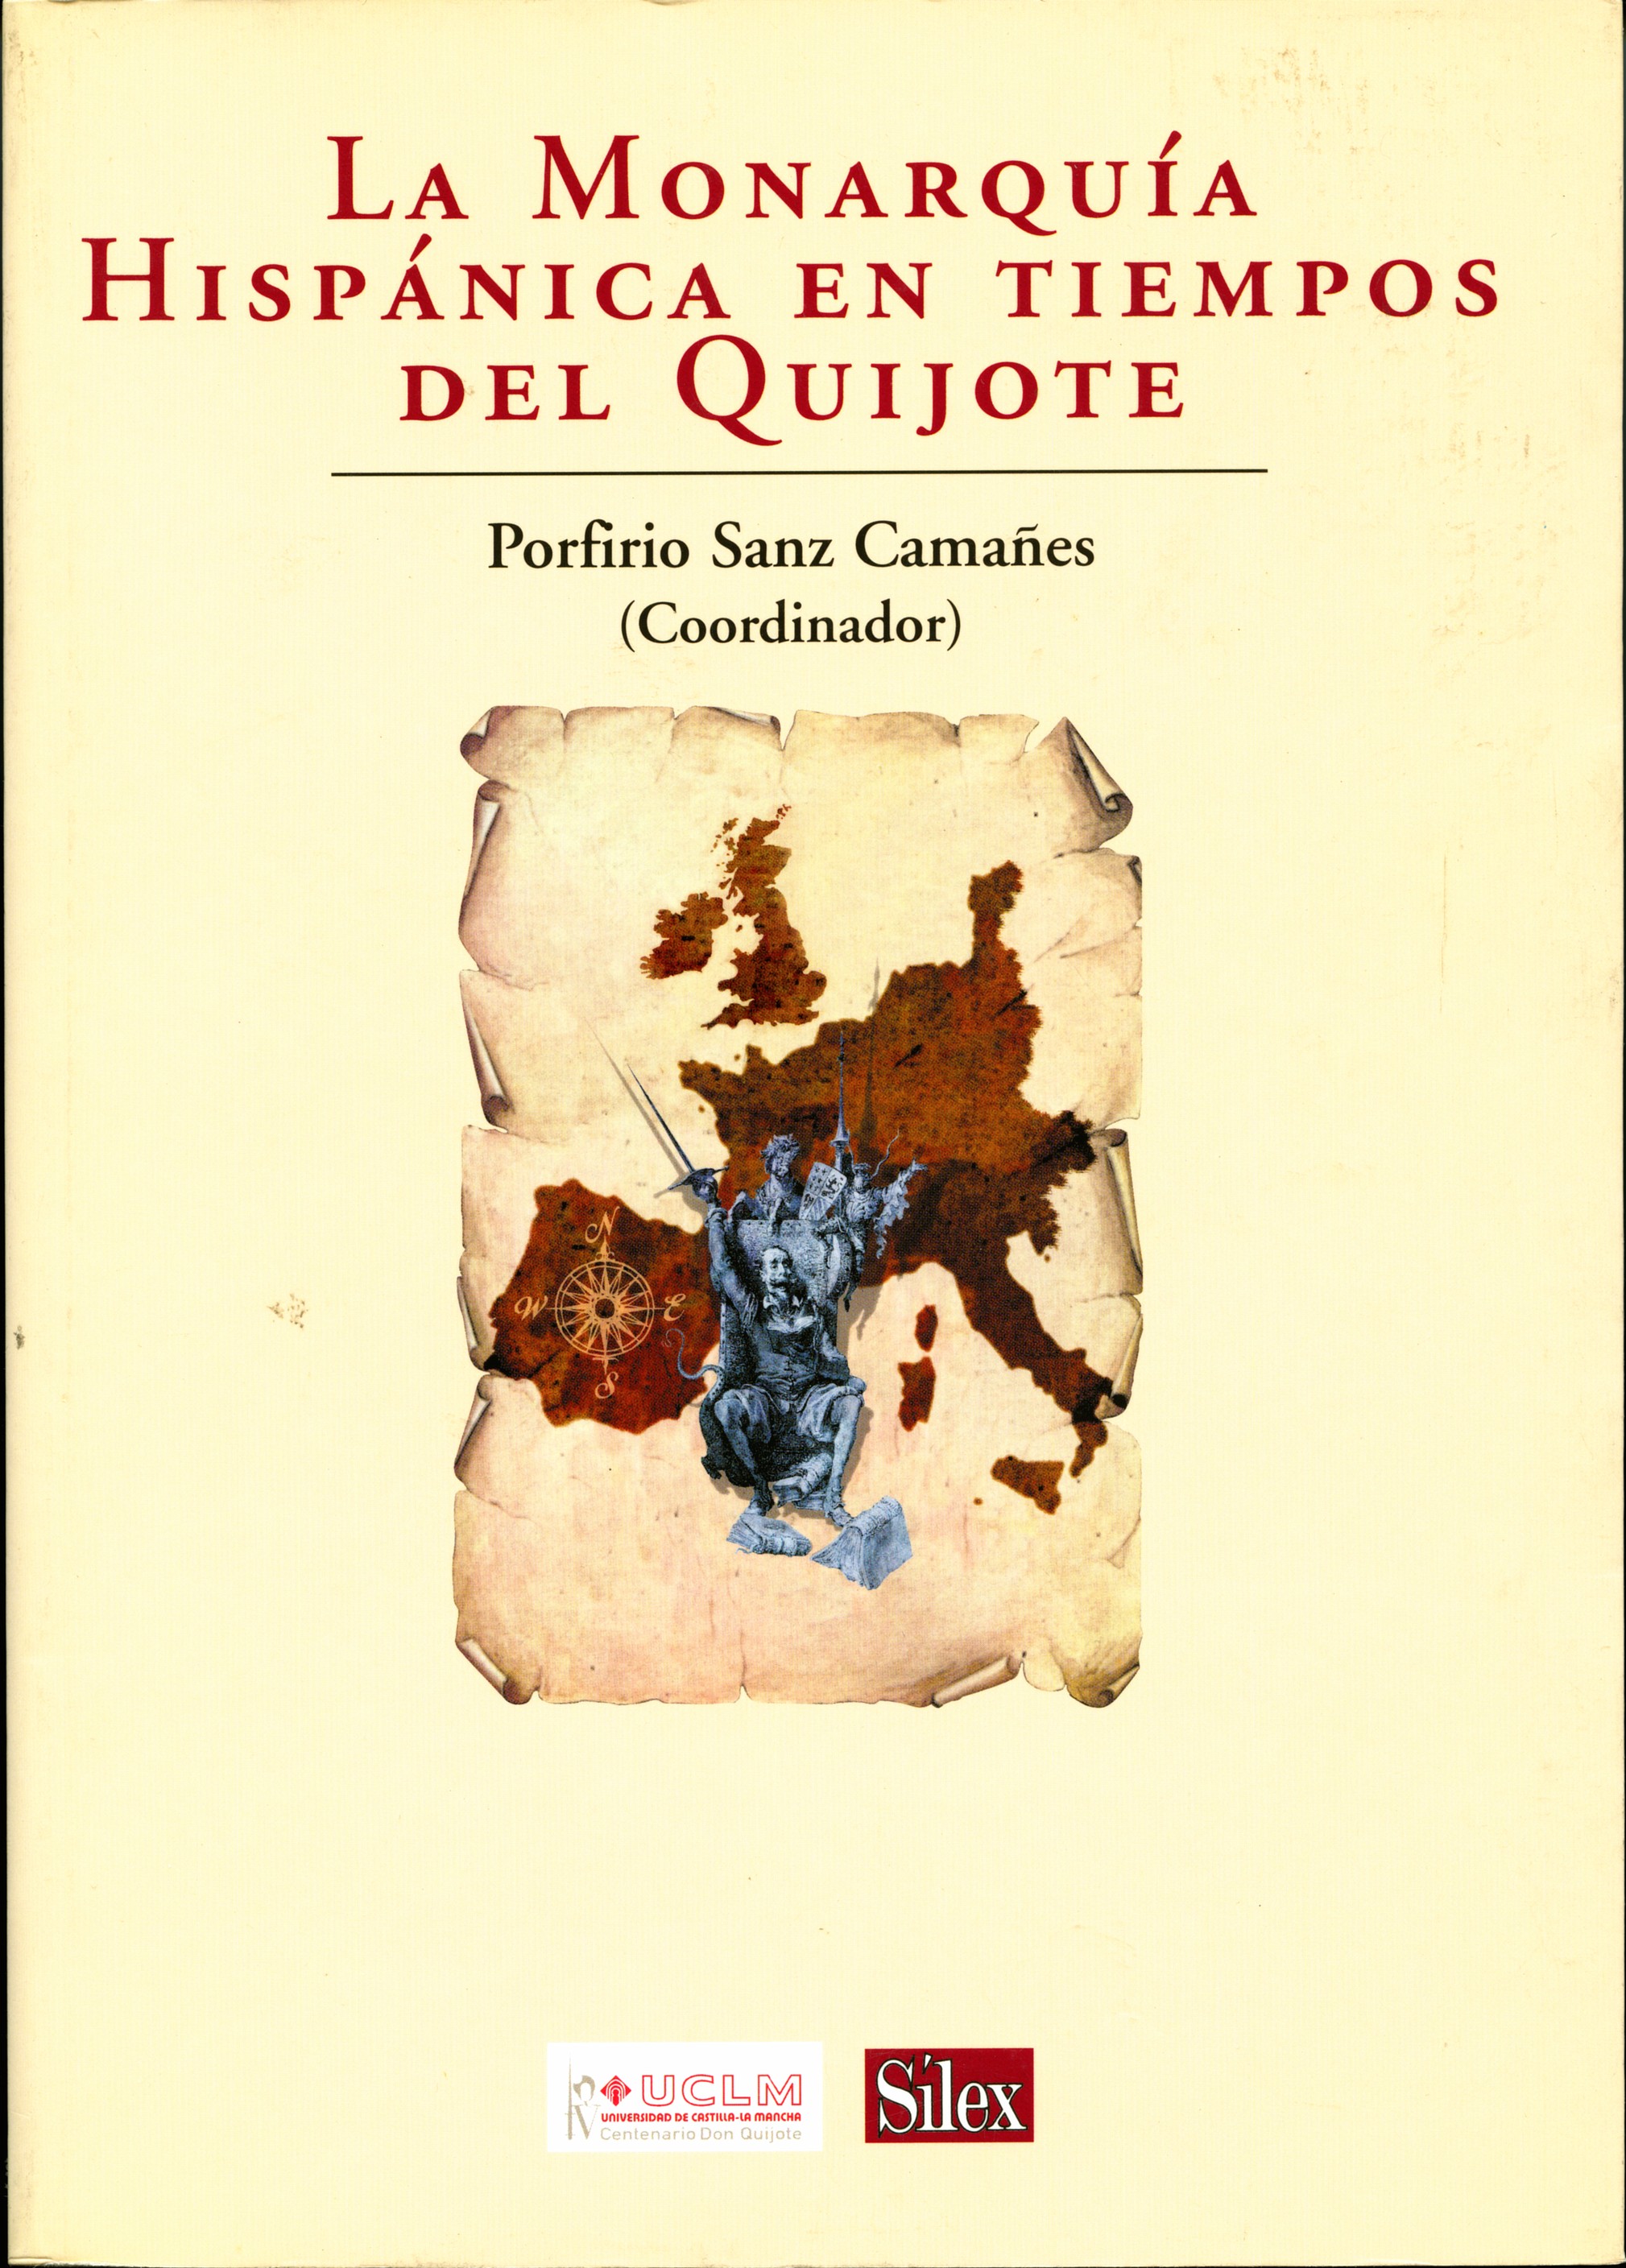 La Monarquía hispánica en tiempos del Quijote